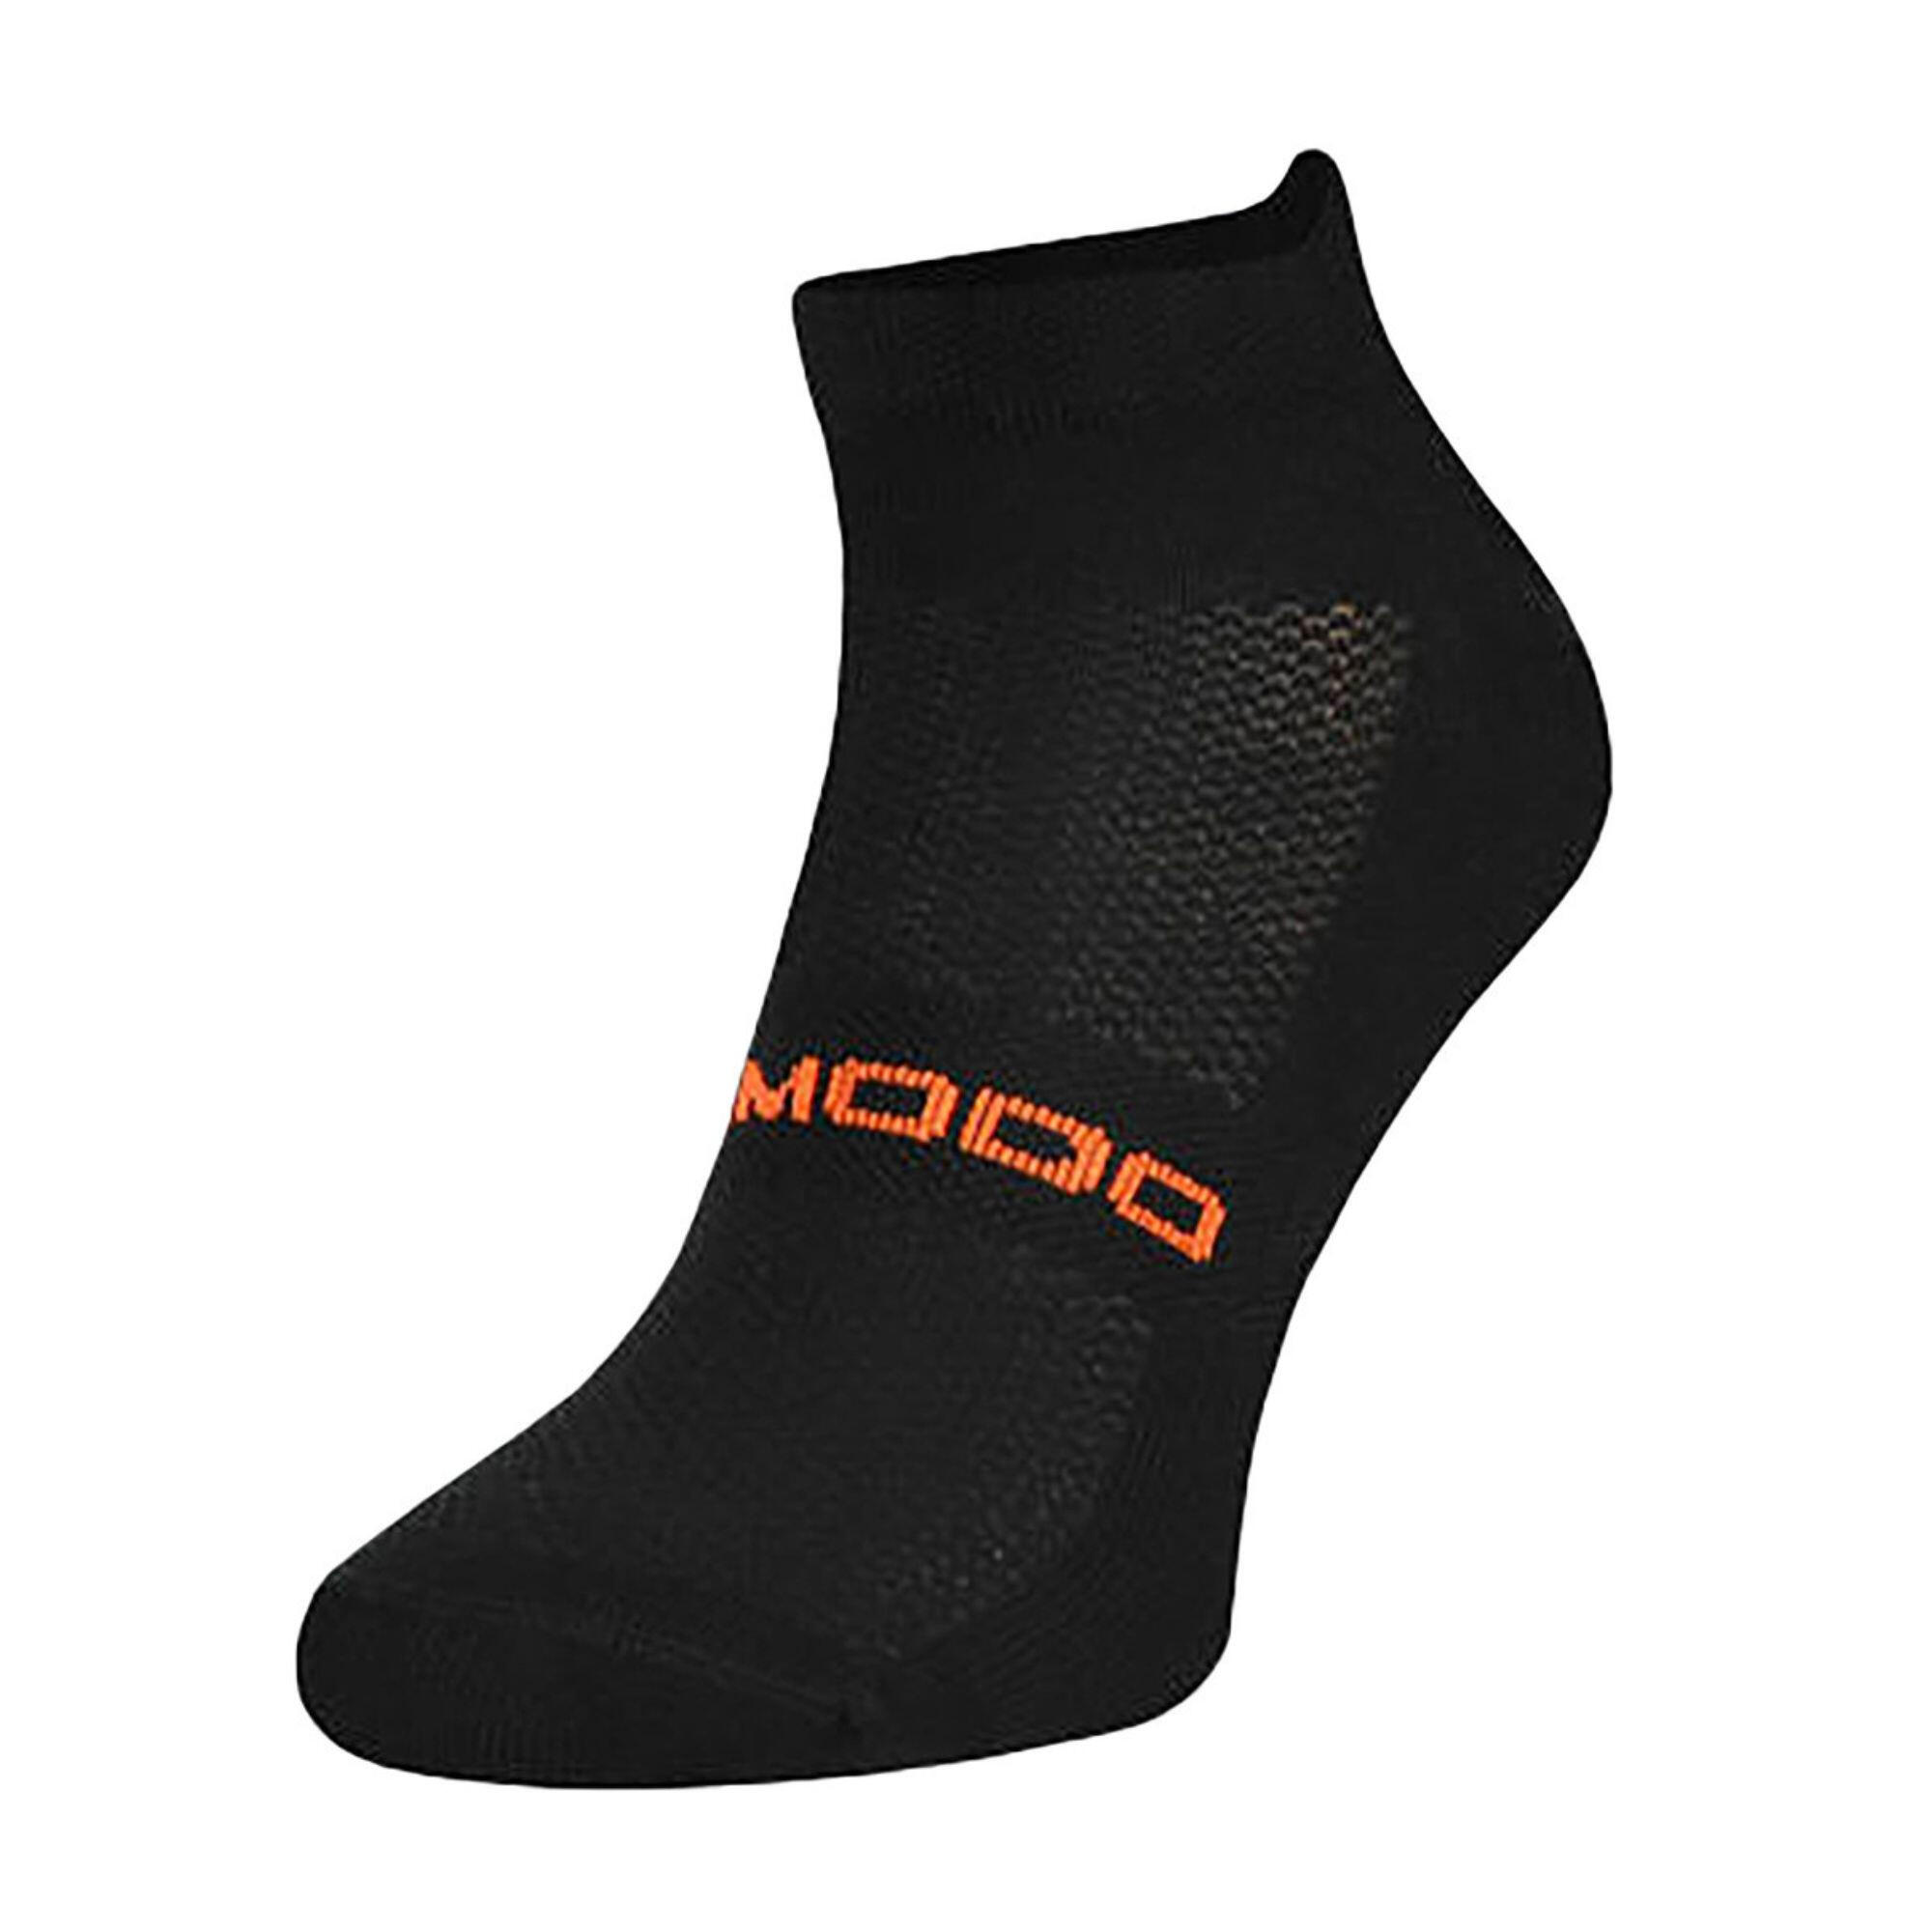 COMODO Merino Wool Ankle Trail Sport Running Socks for Mens & Women